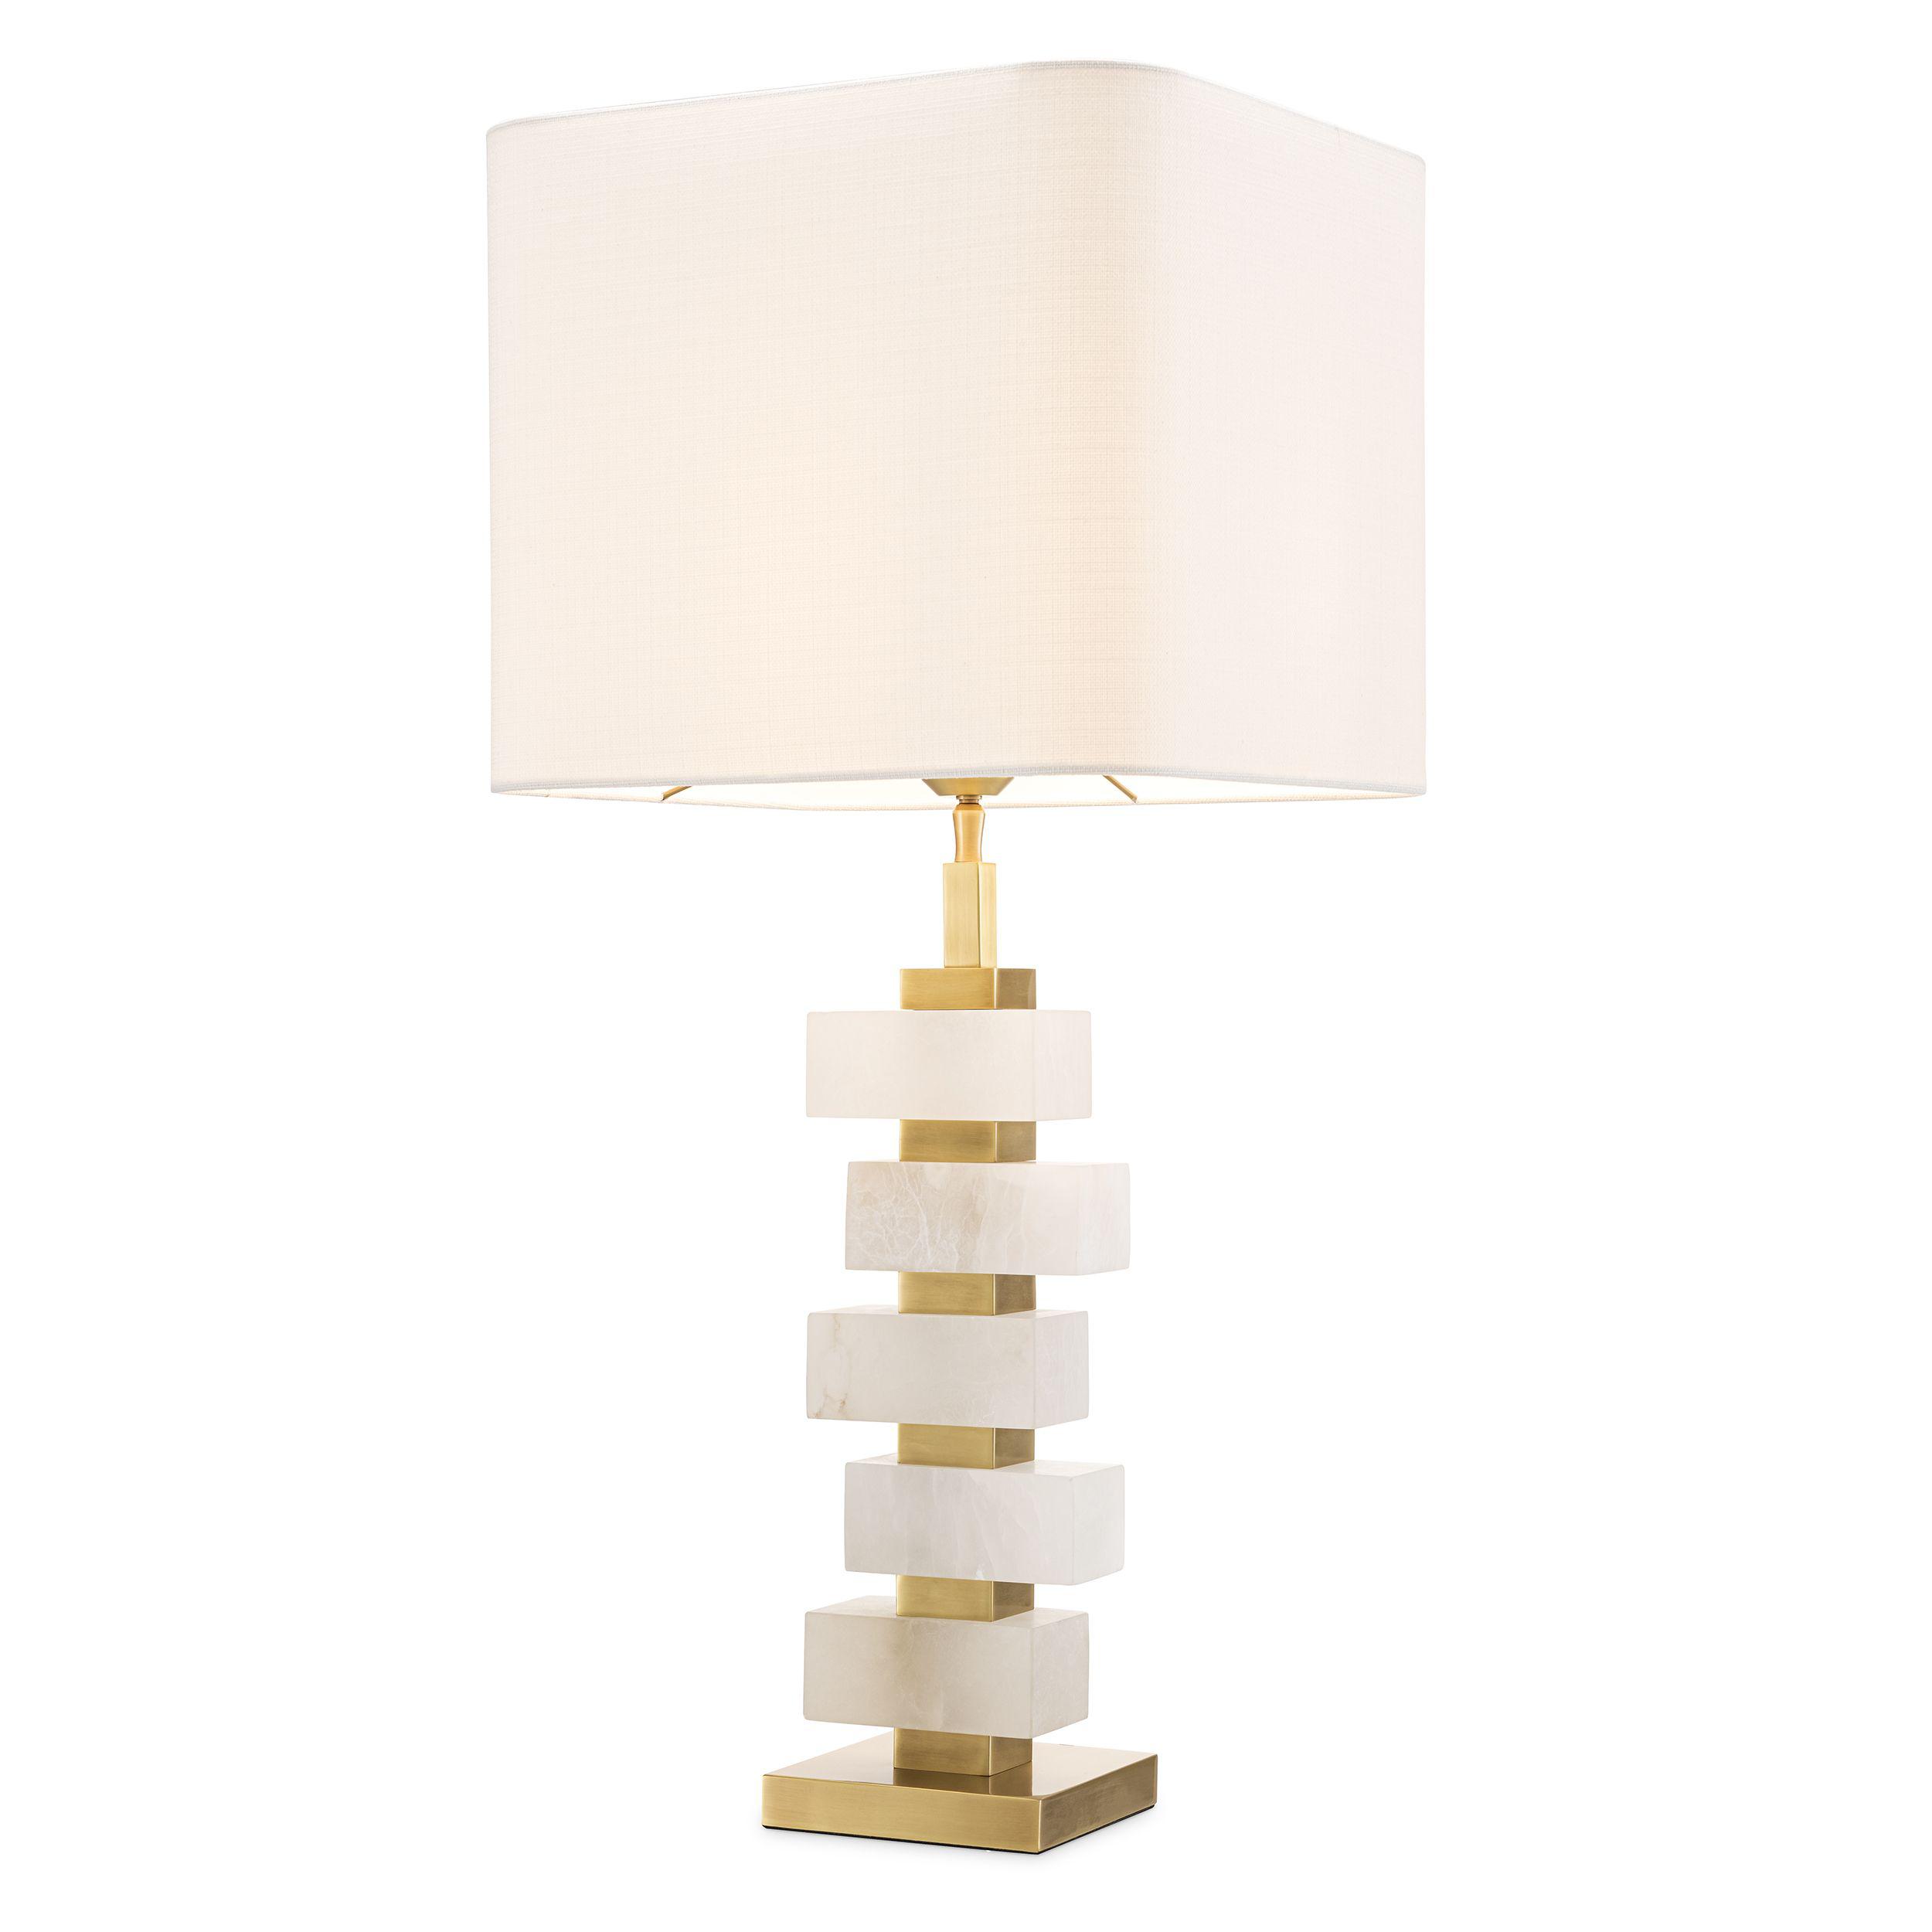 Купить Настольная лампа Table Lamp Amber в интернет-магазине roooms.ru